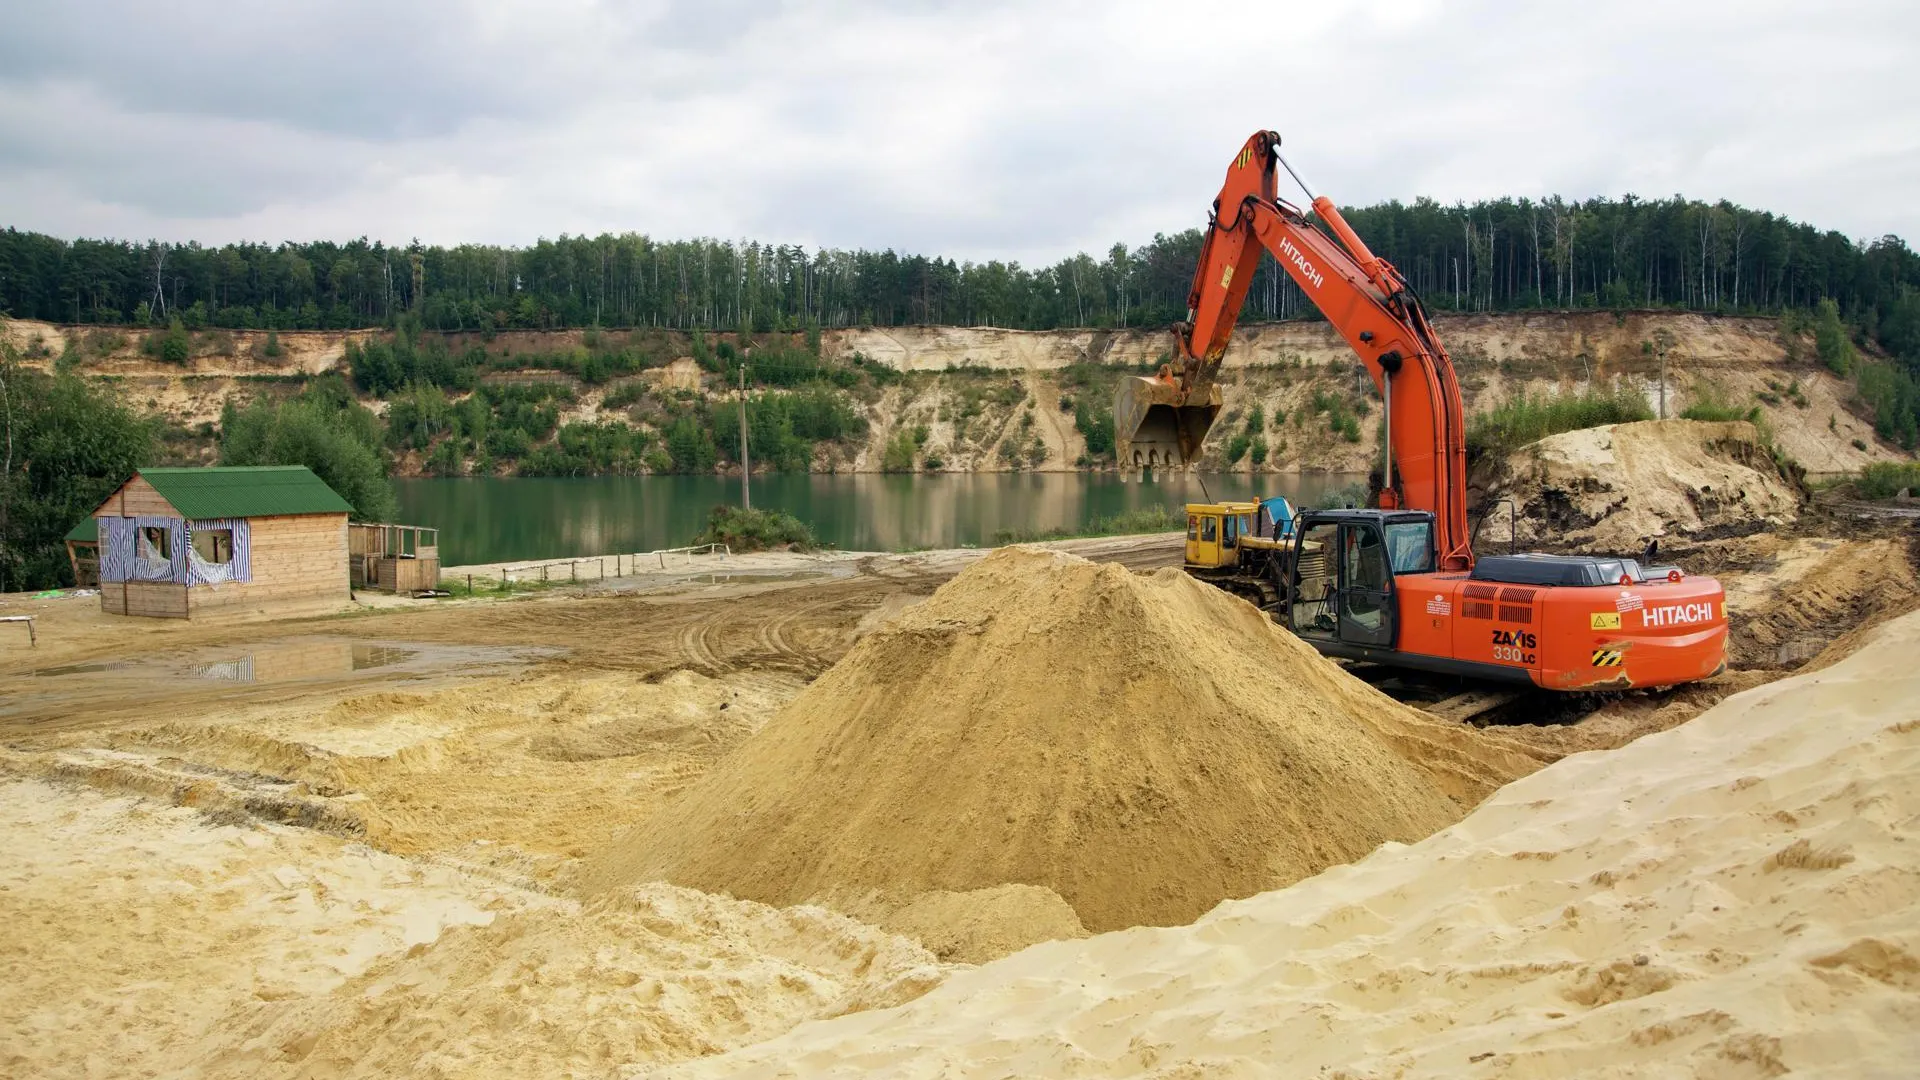 Песок начнут добывать в новом карьере в Коломенском районе